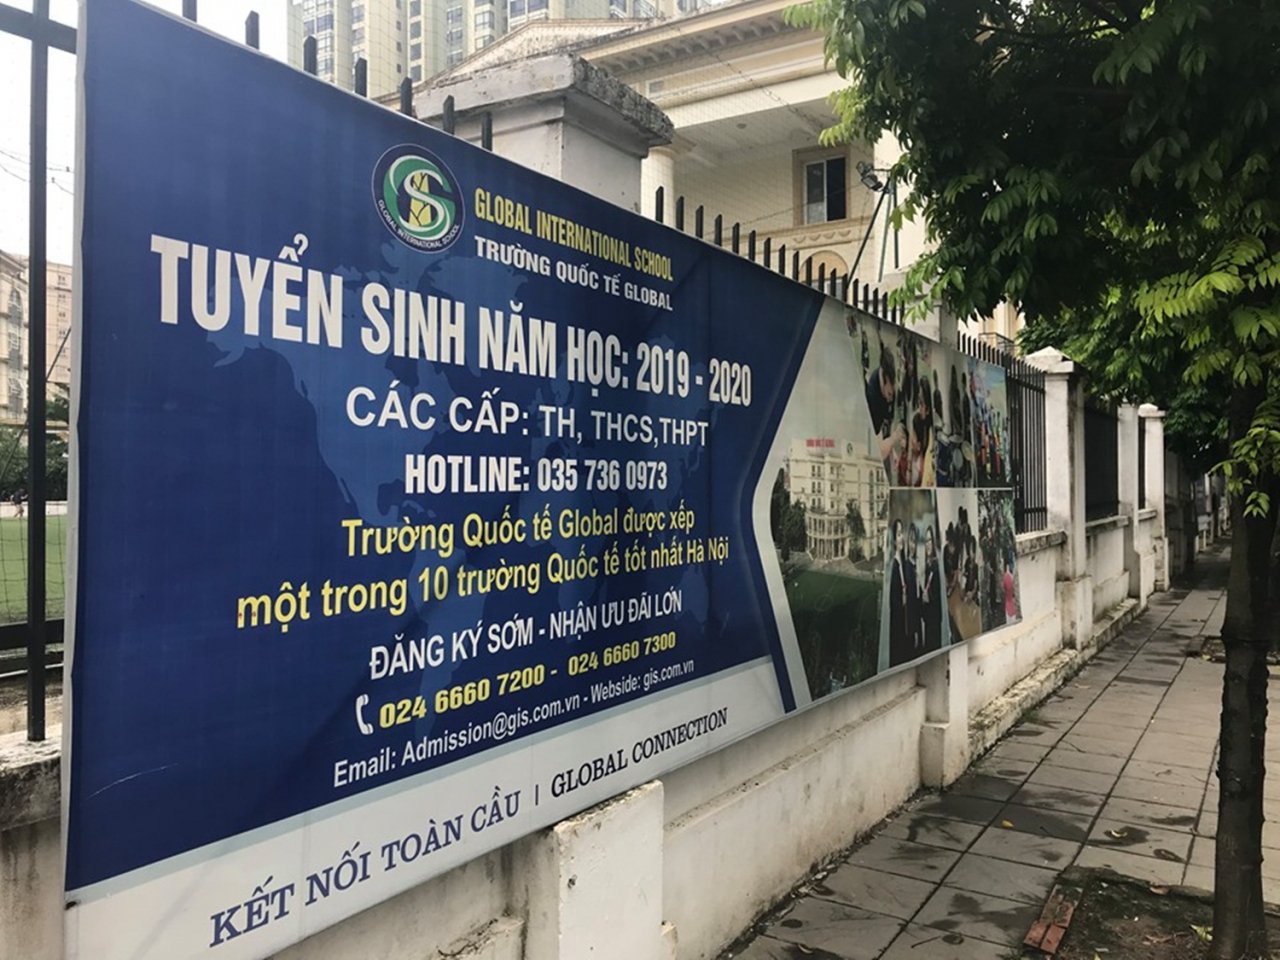 Trường Quốc tế Global ngang nhiên bịa mác top 10 Trường Quốc tế tốt nhất Hà Nội trong băng rôn tuyển sinh và trên website.